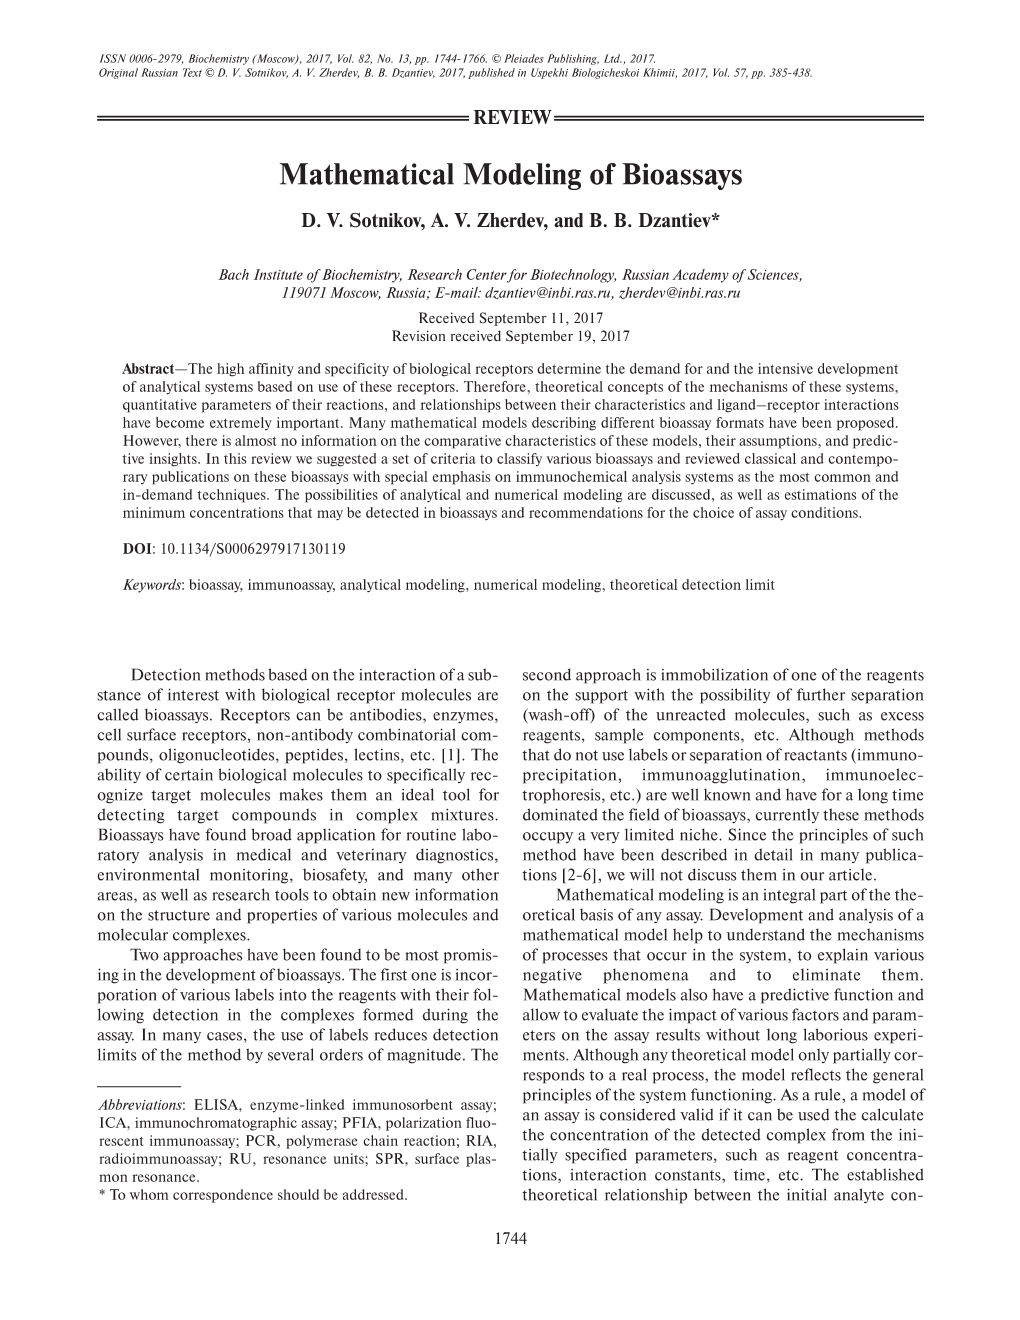 Mathematical Modeling of Bioassays